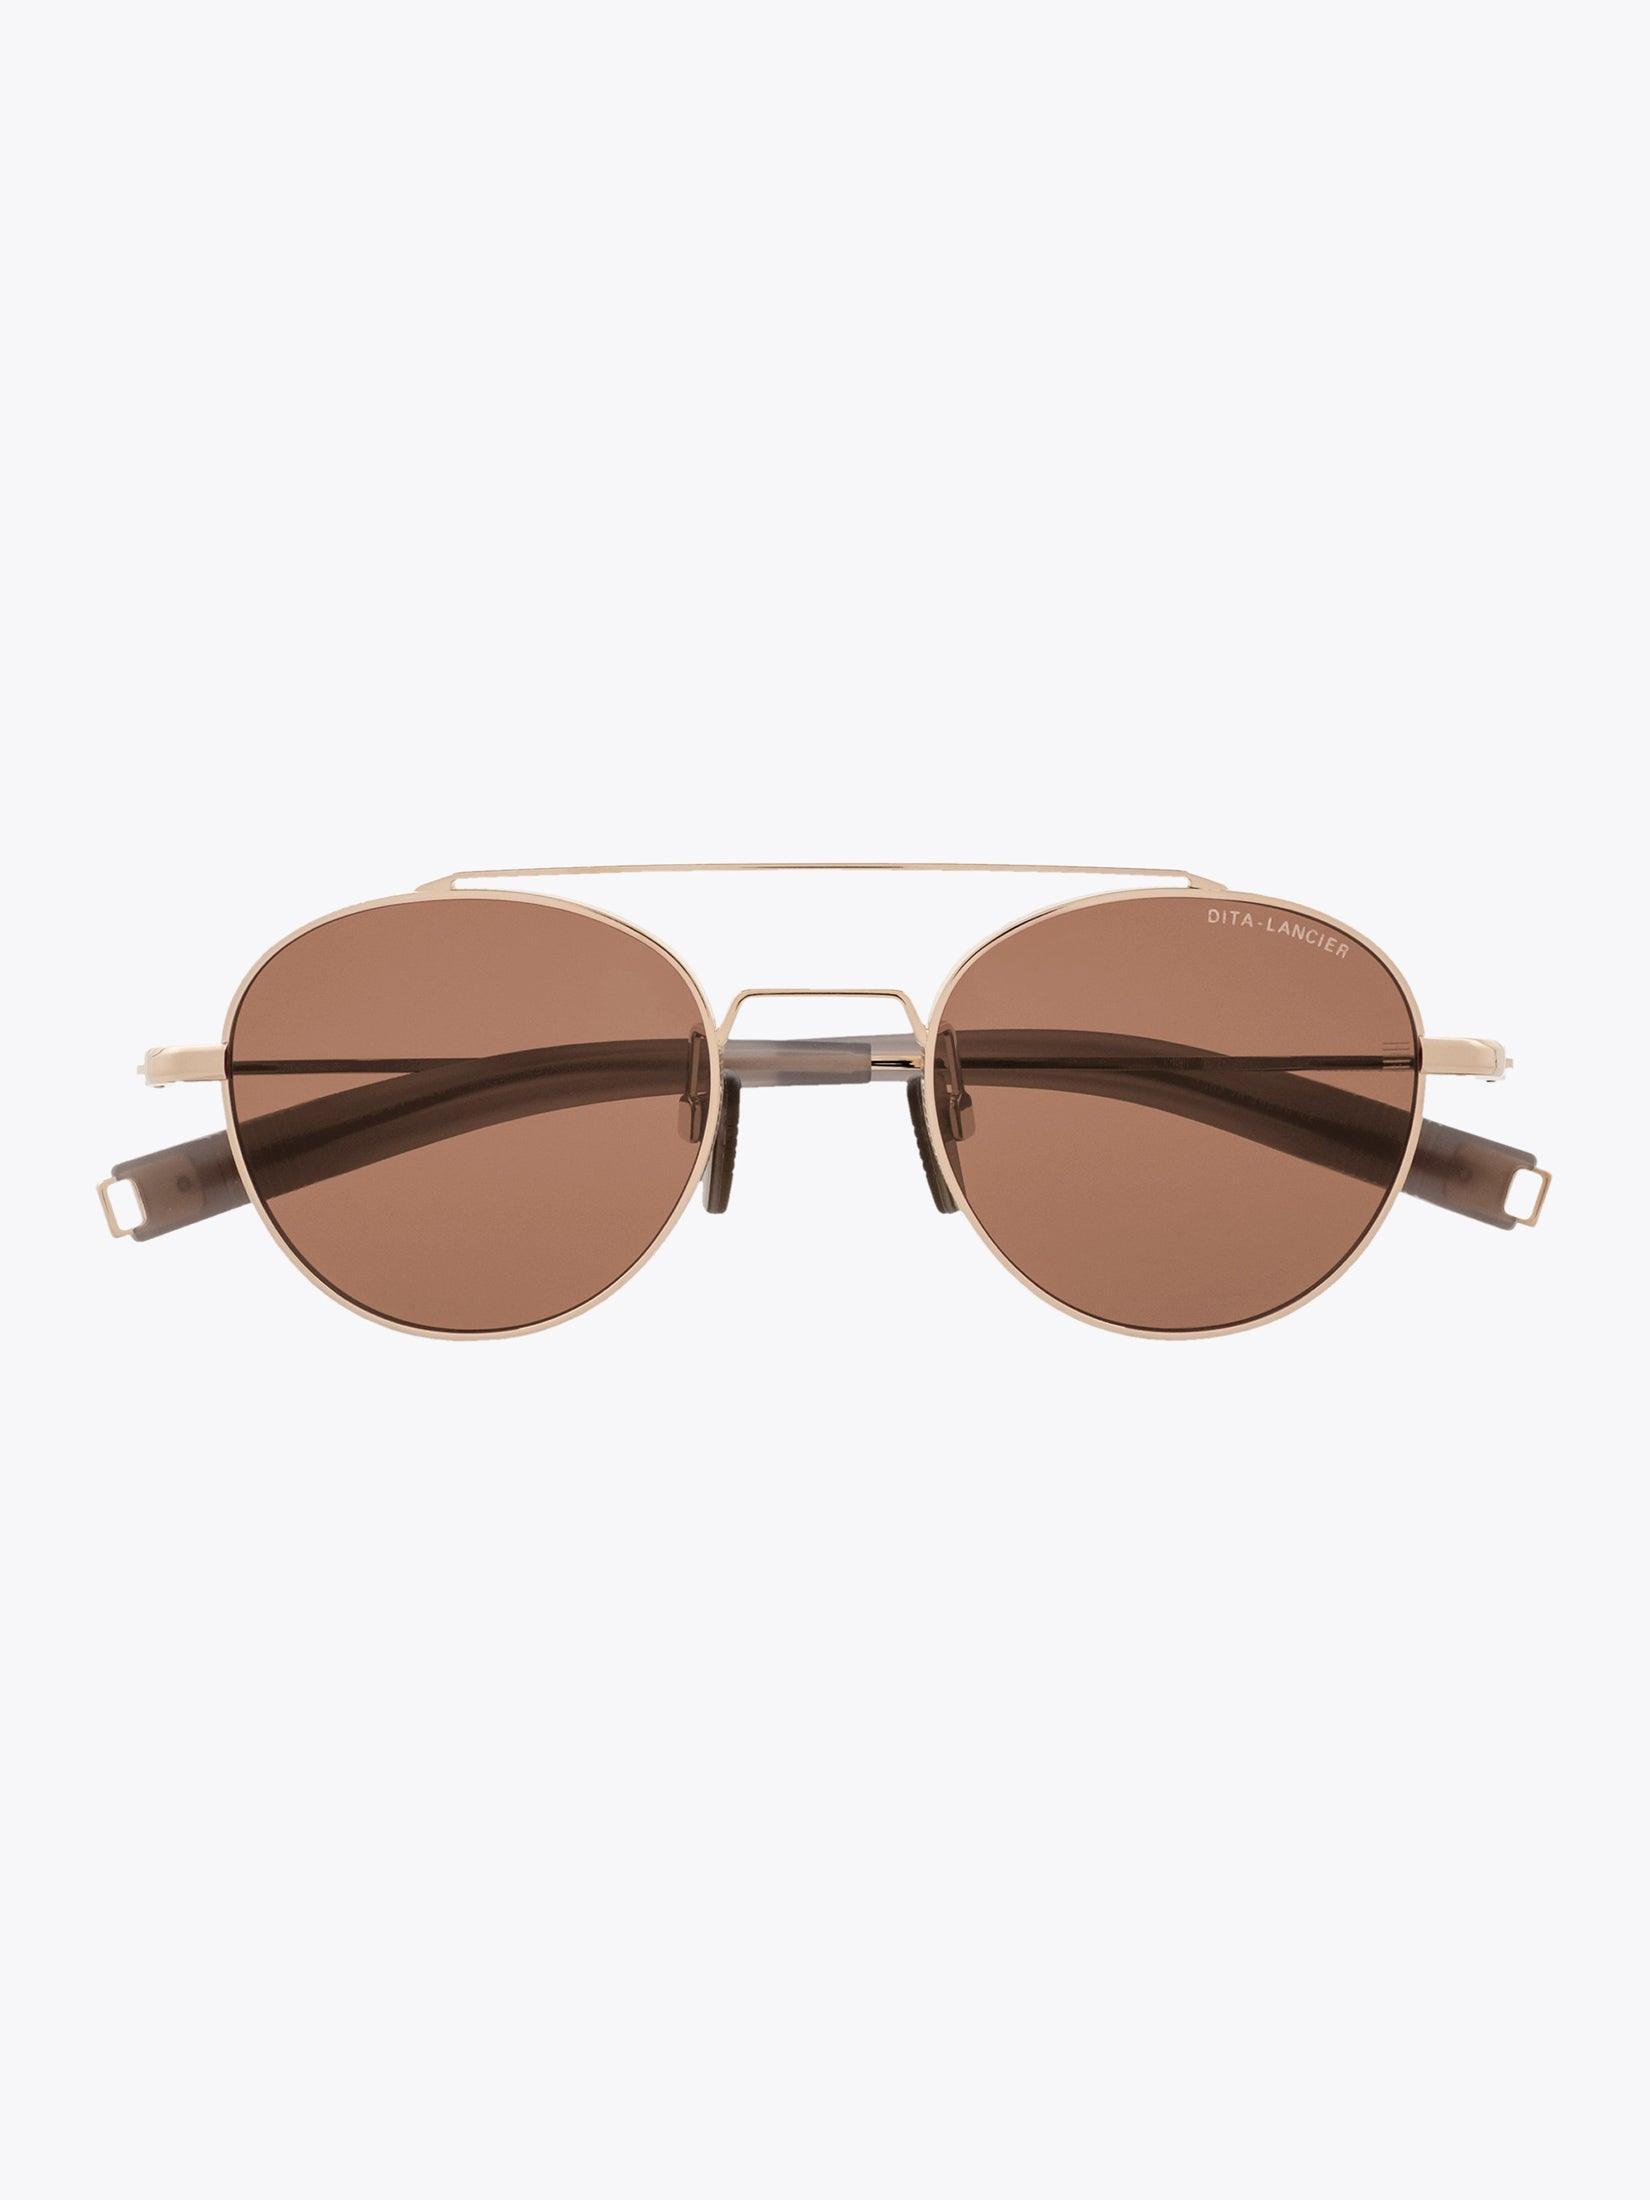 DITA-LANCIER LSA-103 Gold Sunglasses